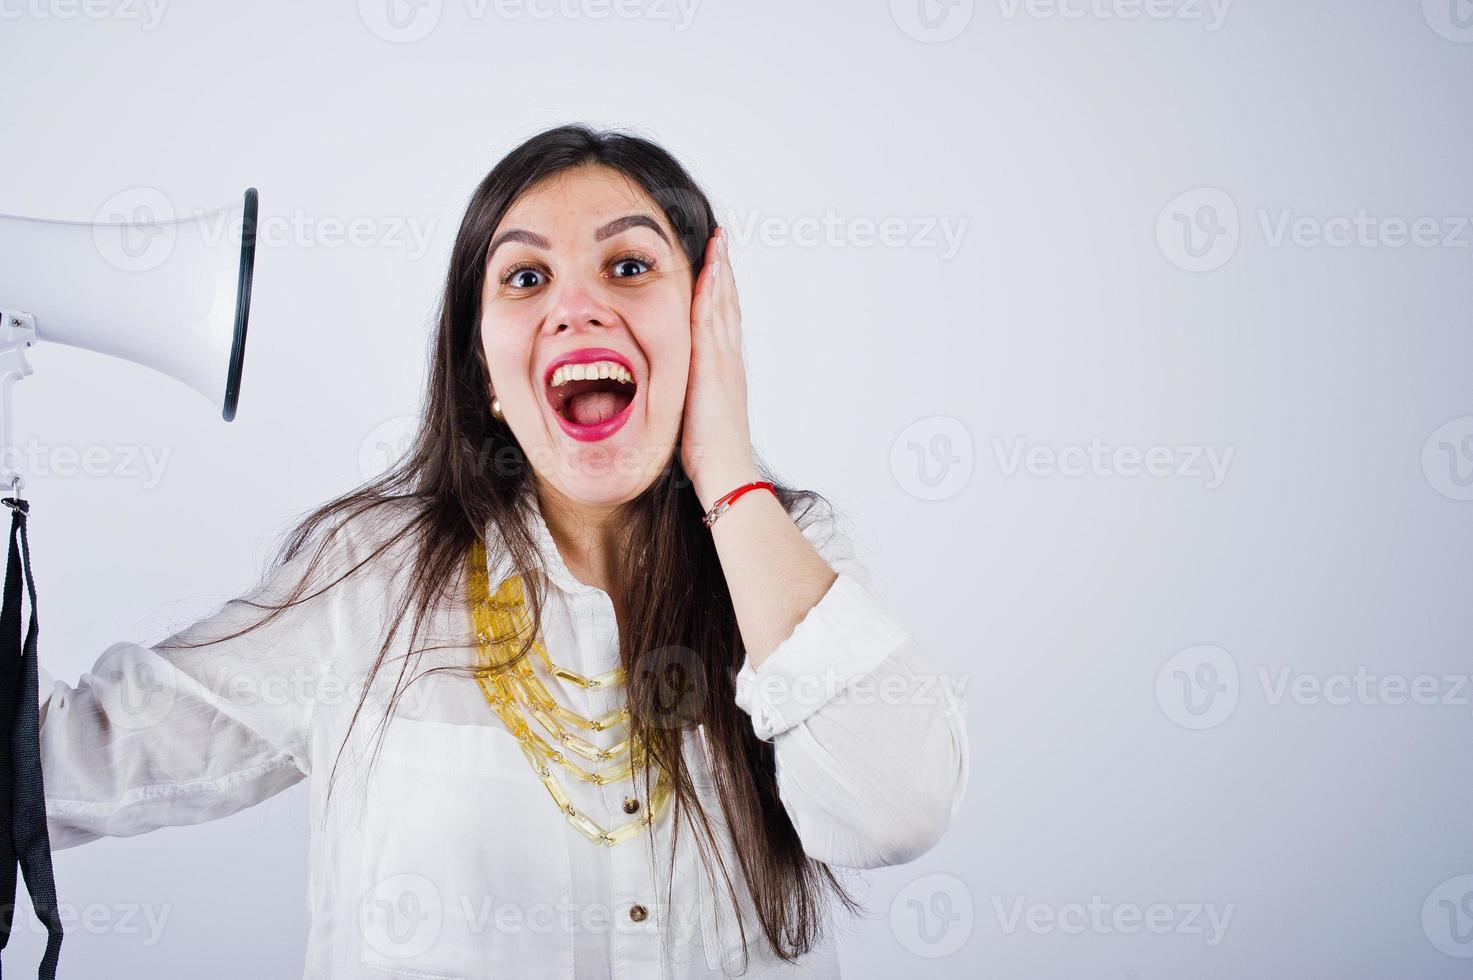 närbild porträtt av en kvinna som täcker sina öron på grund av megafonen. foto